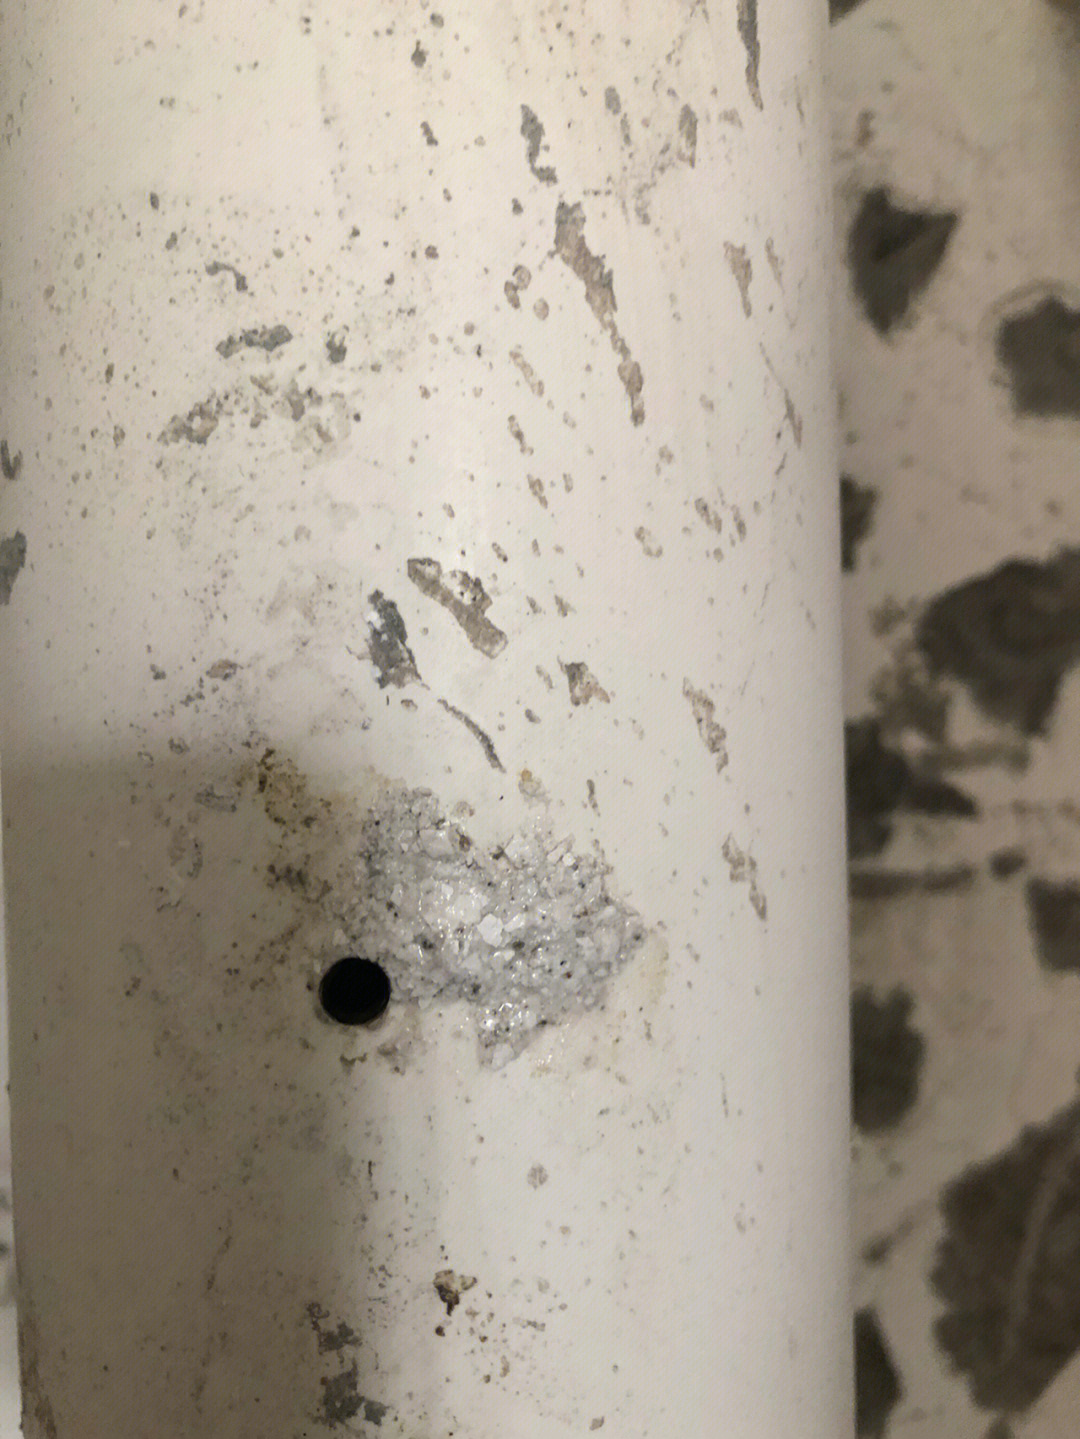 下水管打拆的时候弄了两个洞 有办法修补吗 这个水管是连接楼上楼下的